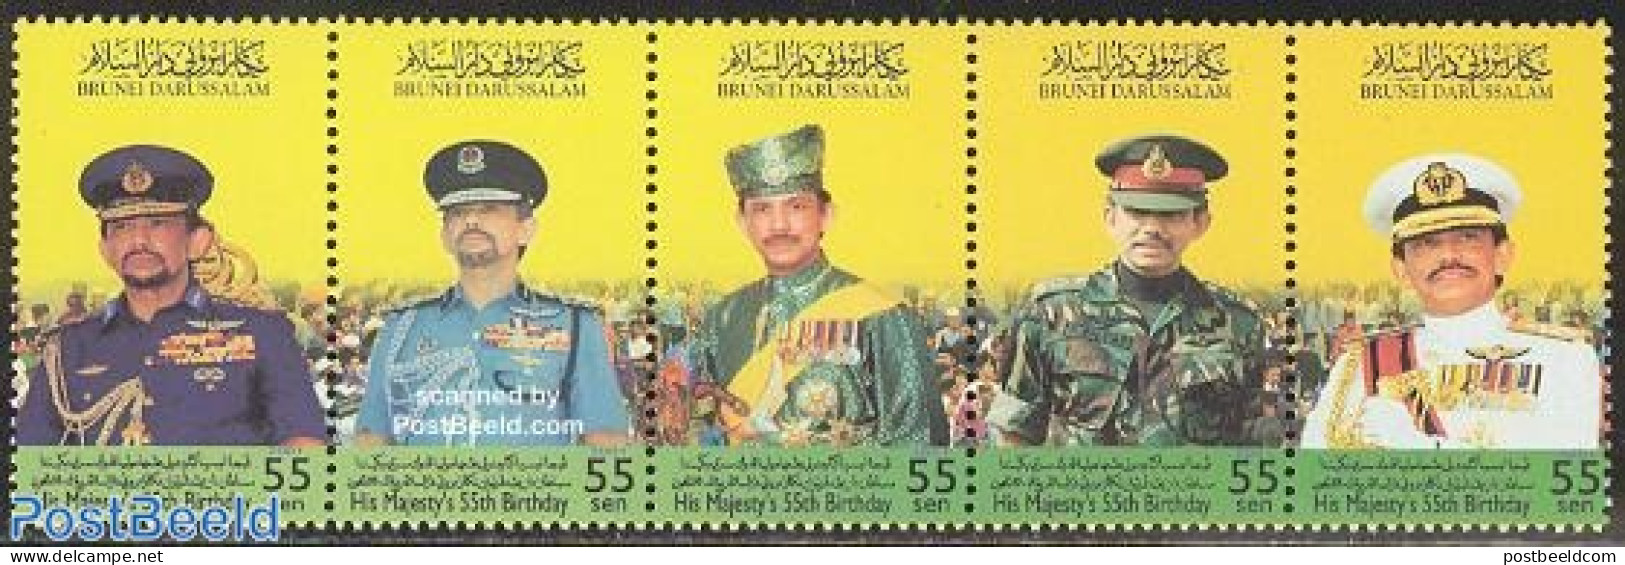 Brunei 2001 King 55th Birthday 5v [::::], Mint NH, History - Various - Kings & Queens (Royalty) - Uniforms - Königshäuser, Adel